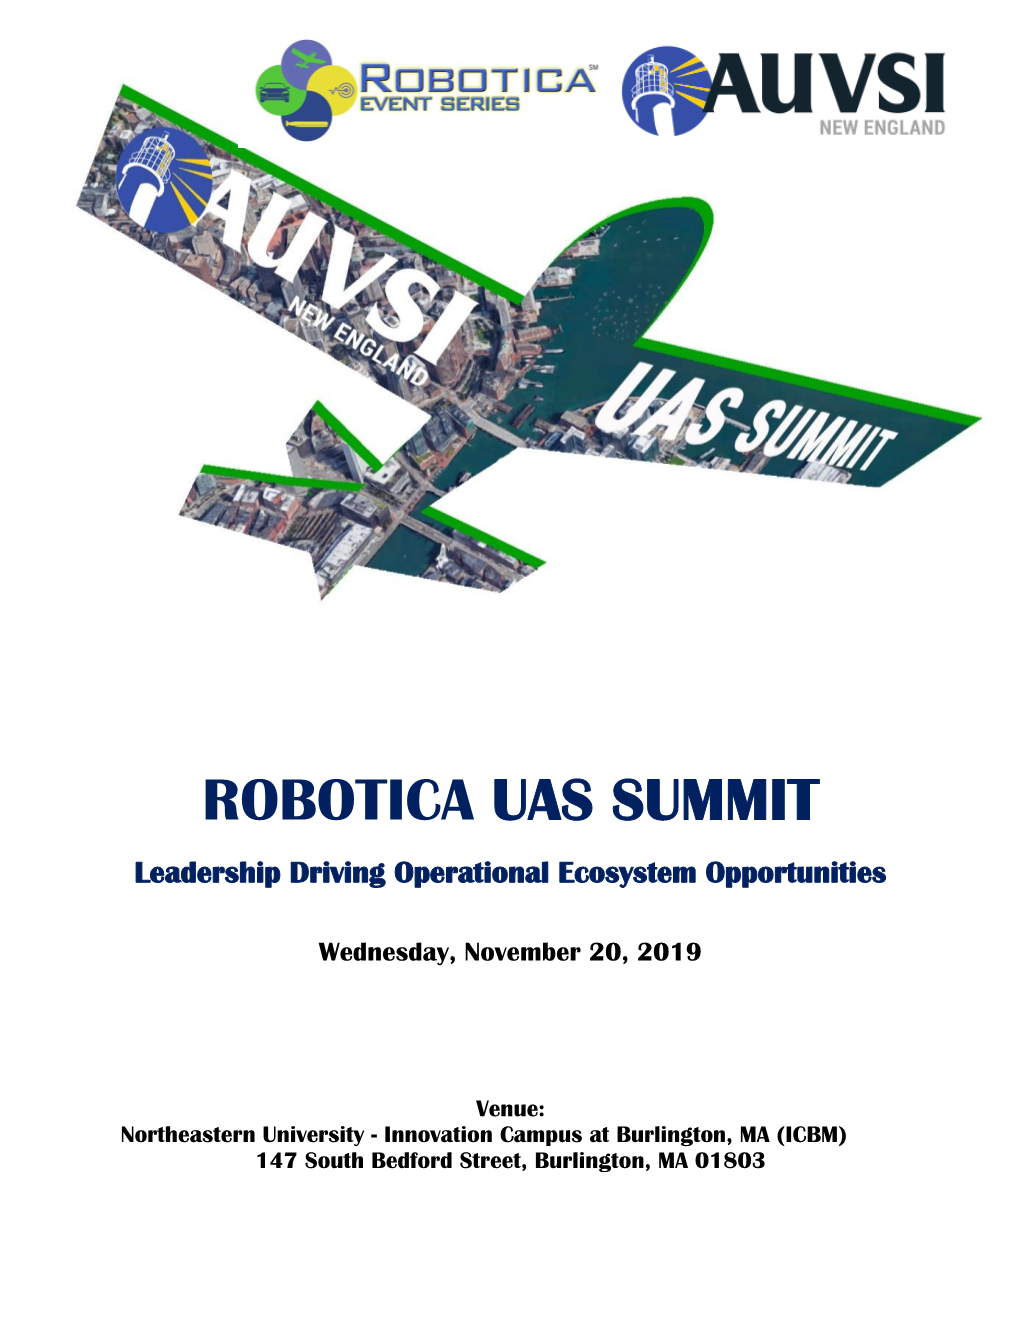 Robotica Uas Summit